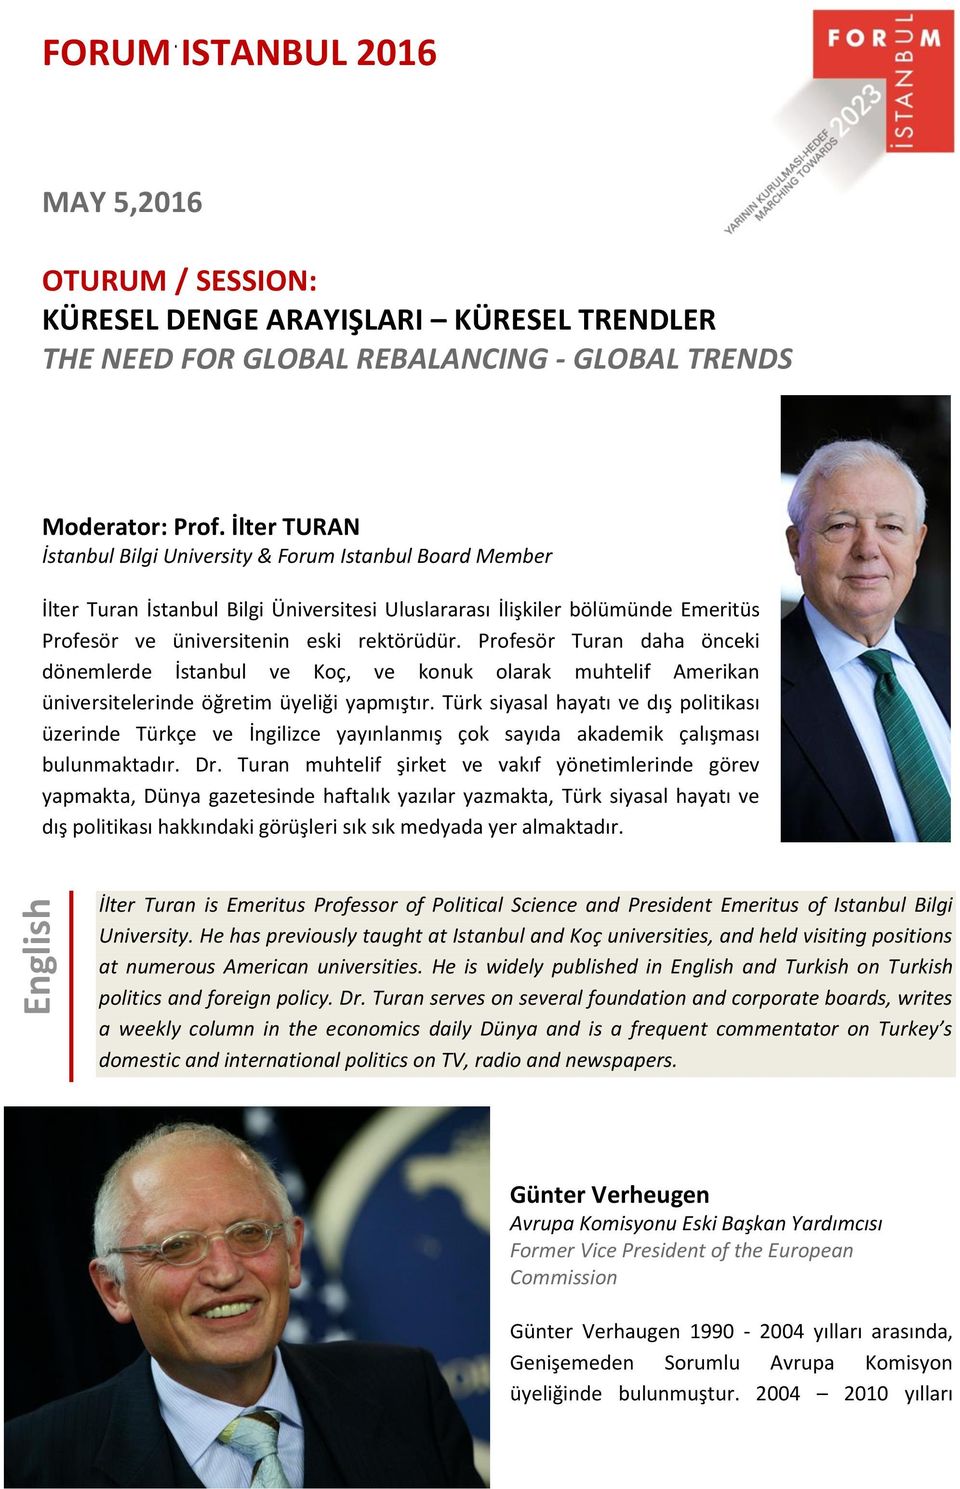 Profesör Turan daha önceki dönemlerde İstanbul ve Koç, ve konuk olarak muhtelif Amerikan üniversitelerinde öğretim üyeliği yapmıştır.